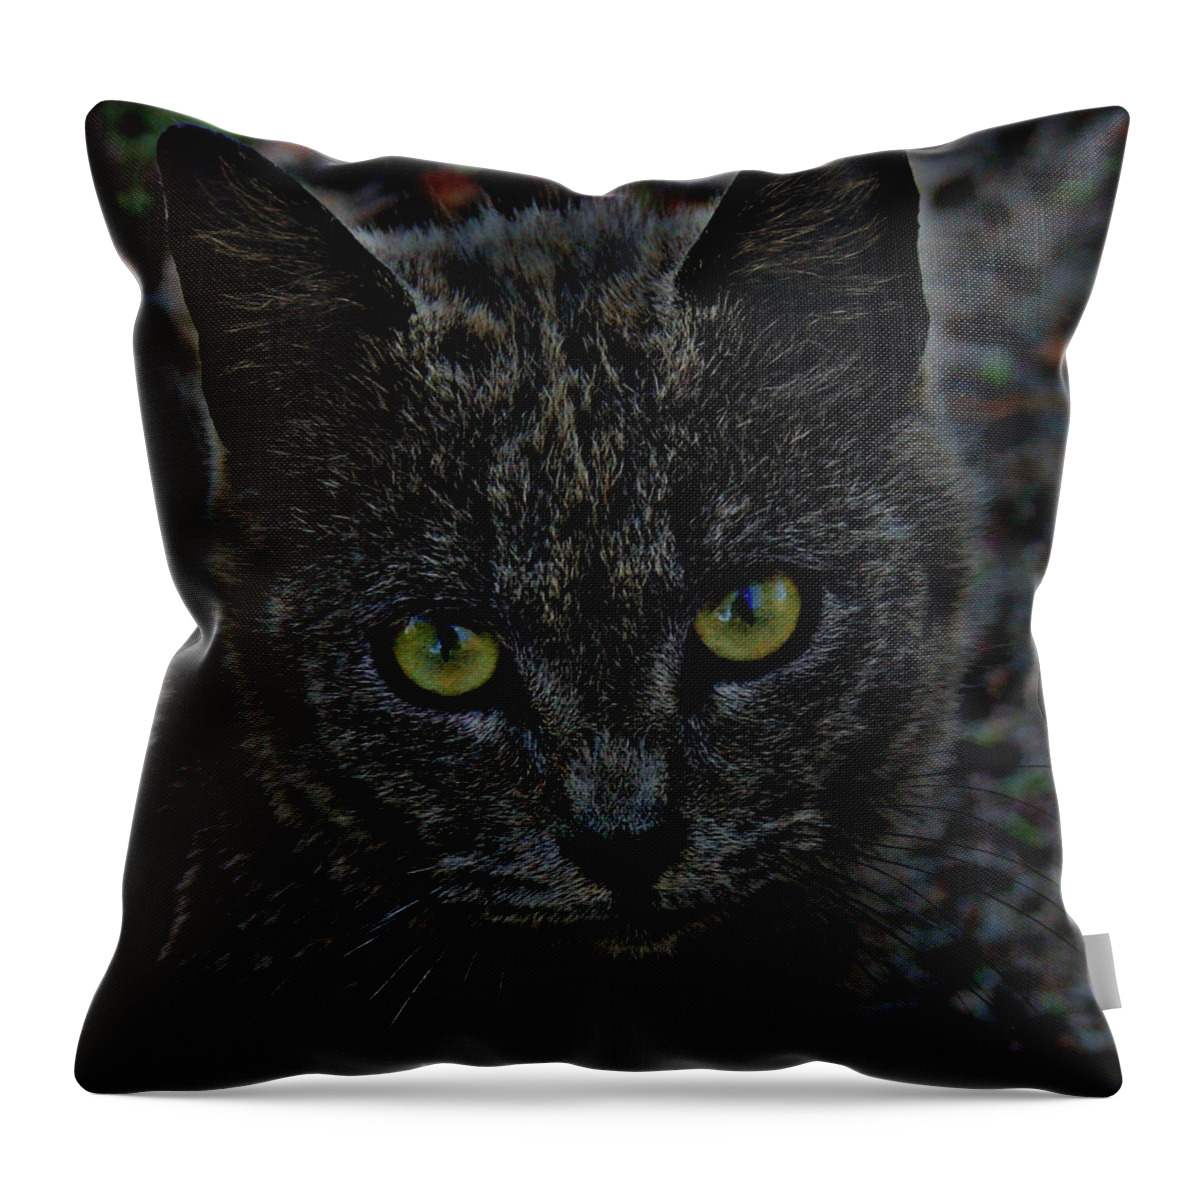 Cat Throw Pillow featuring the digital art Zanzabar the cat by Cathy Harper